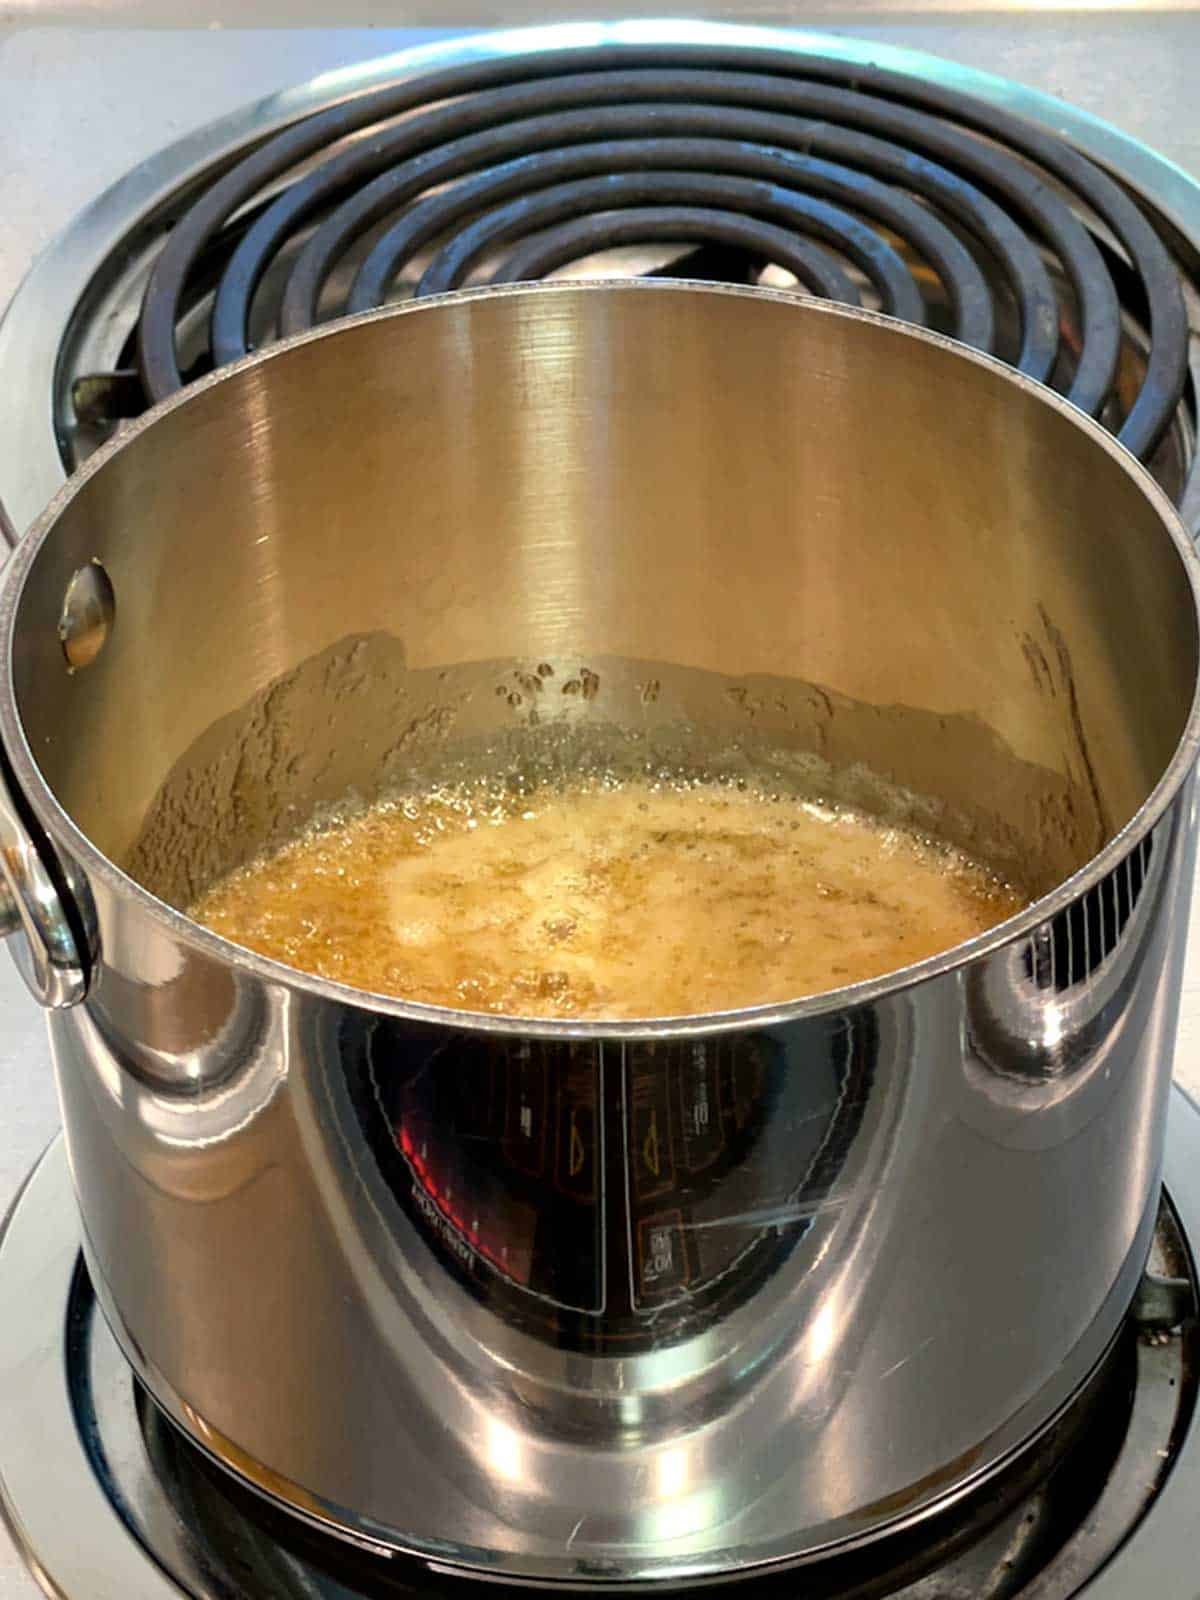 Caramel boiling in saucepan.